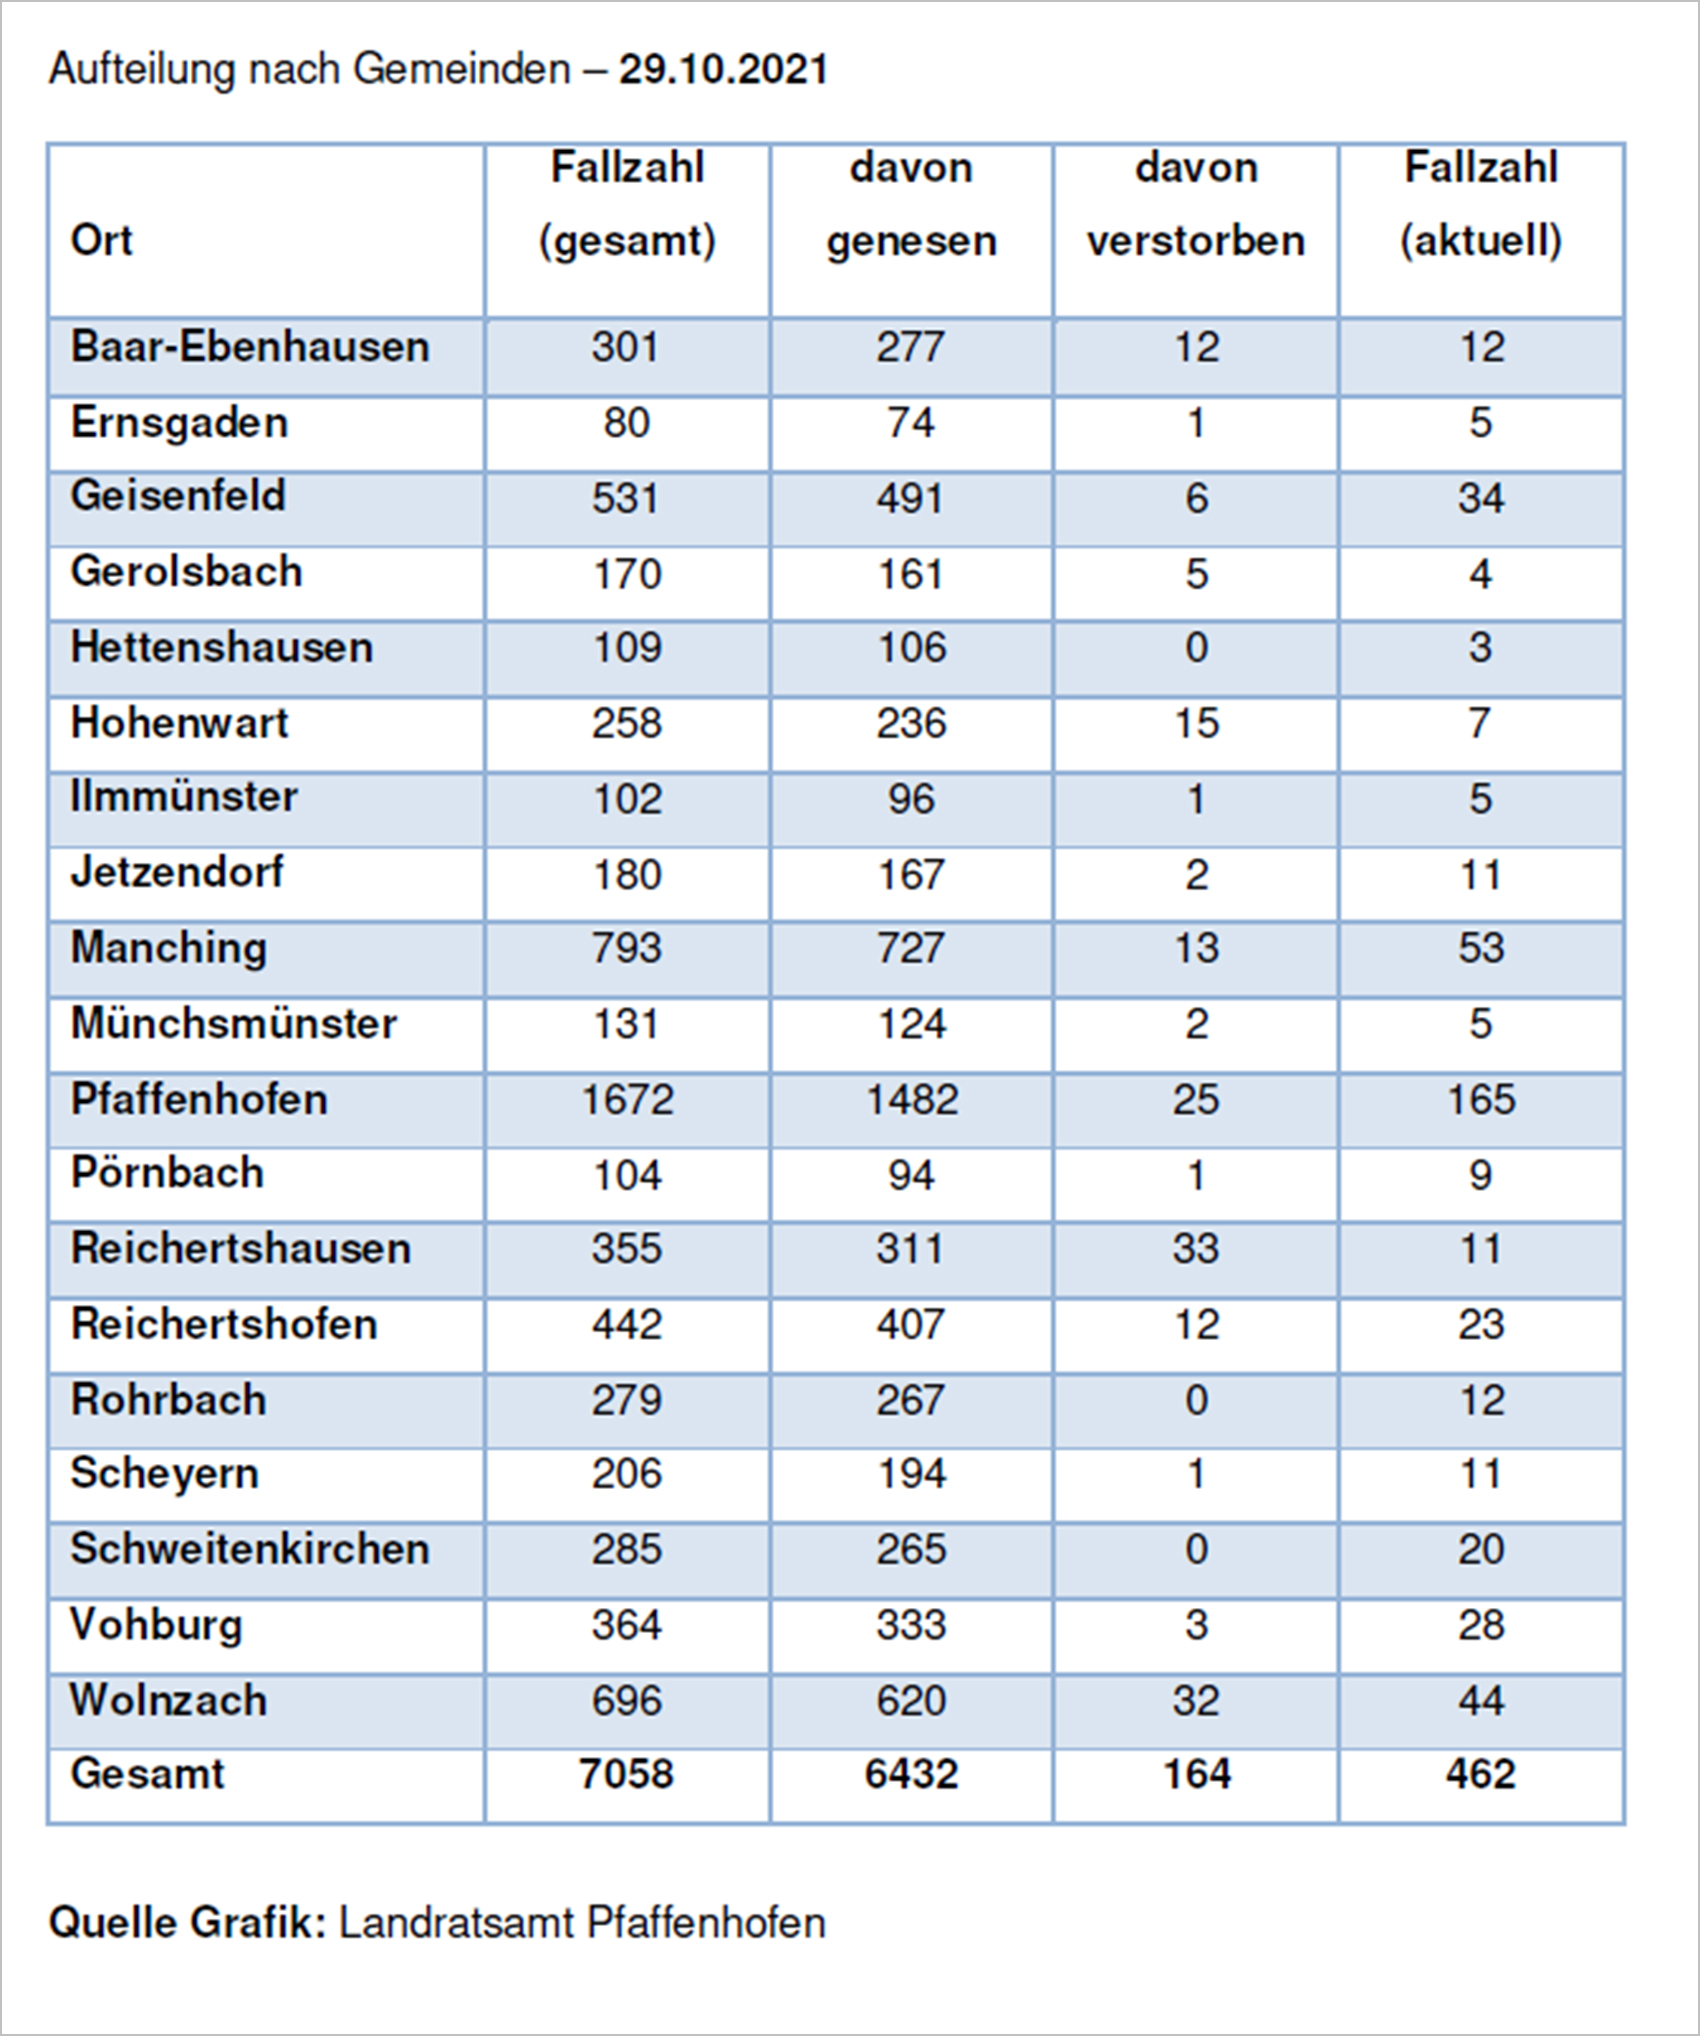 Verteilung der Fallzahlen auf die Landkreisgemeinden - 29.10.2021